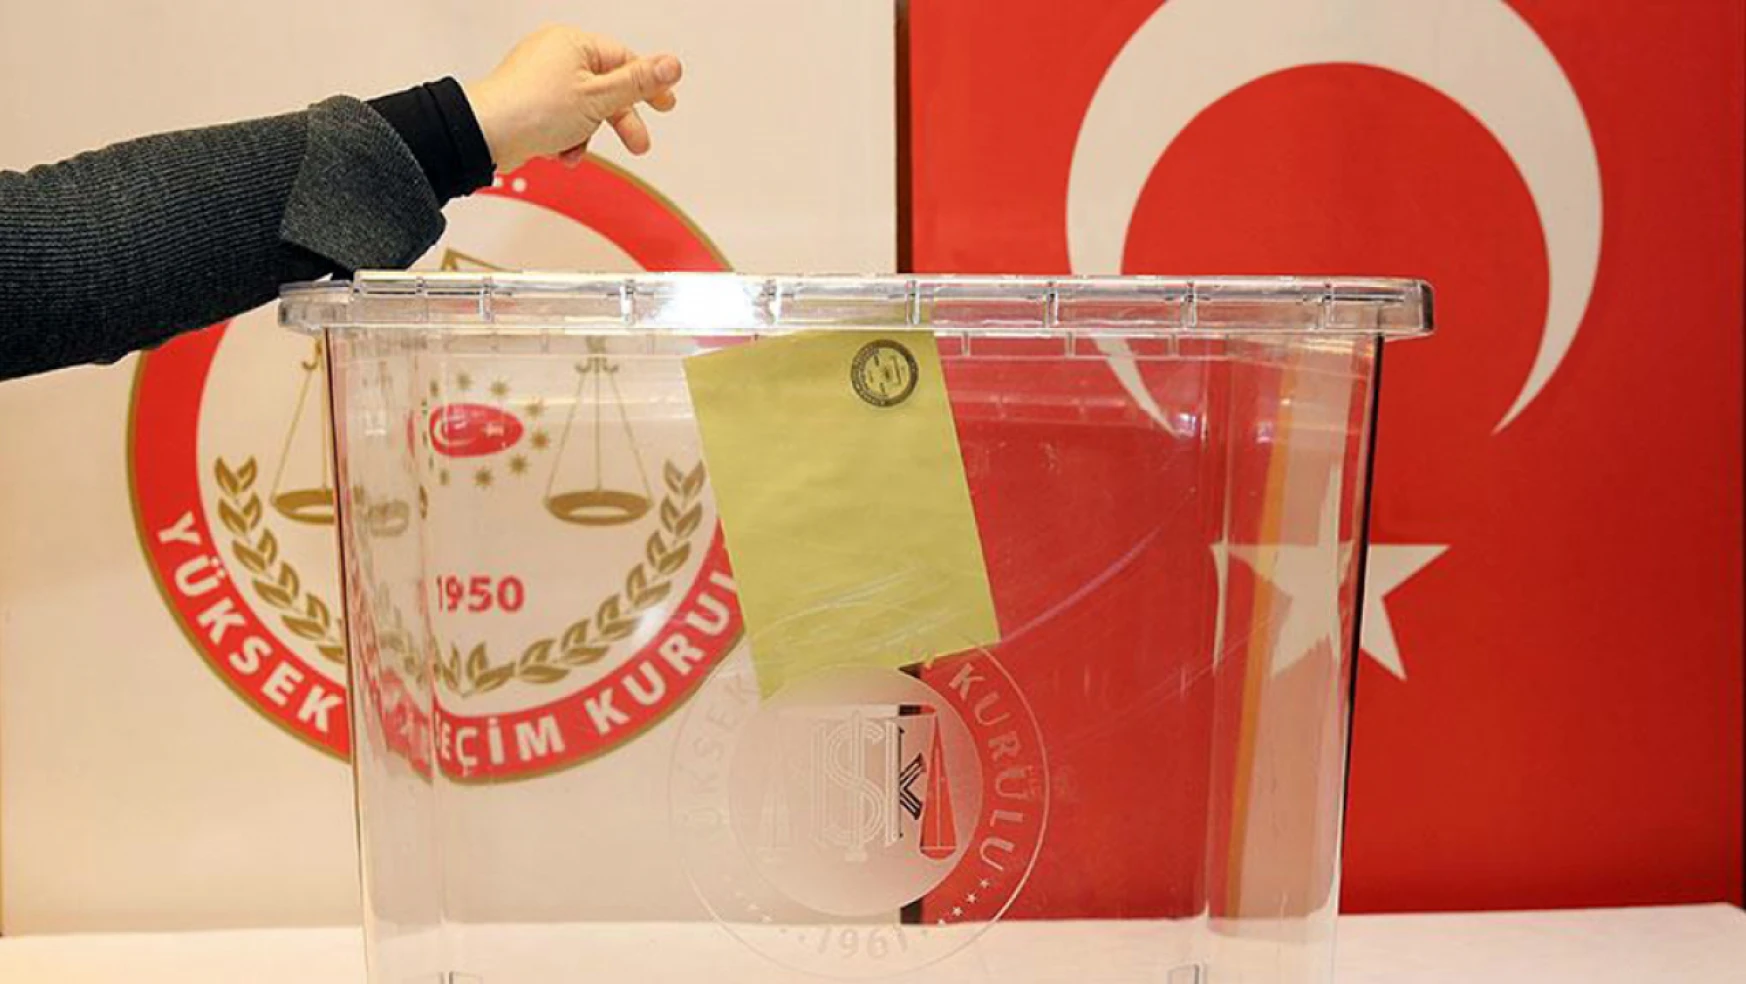 Türkiye seçime gidiyor